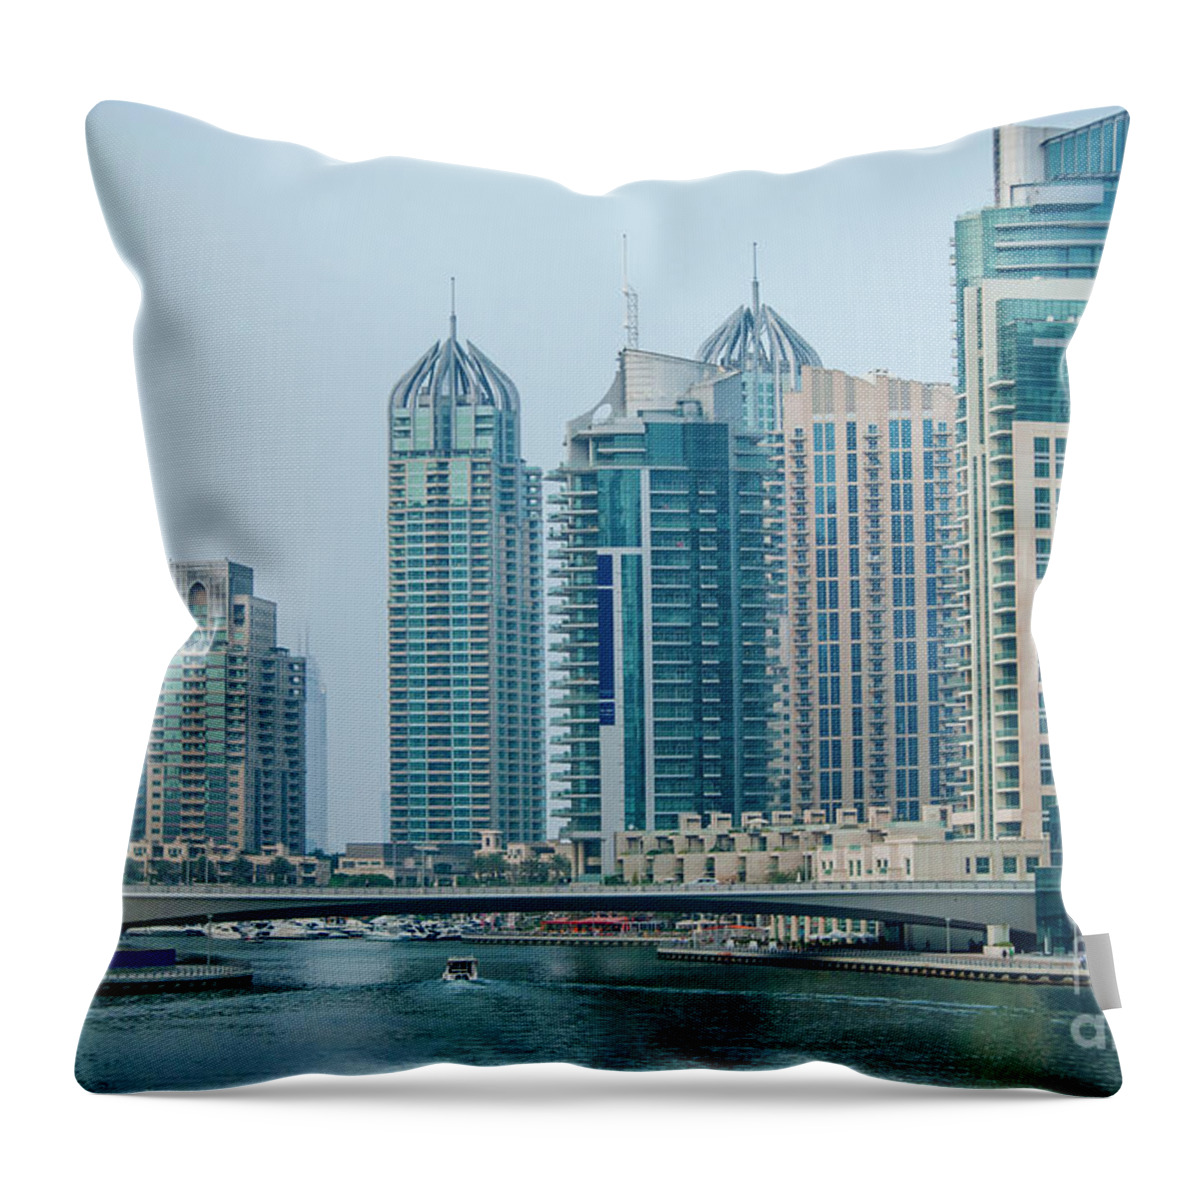 Dubai Throw Pillow featuring the photograph Dubai marina cityscape by Jelena Jovanovic